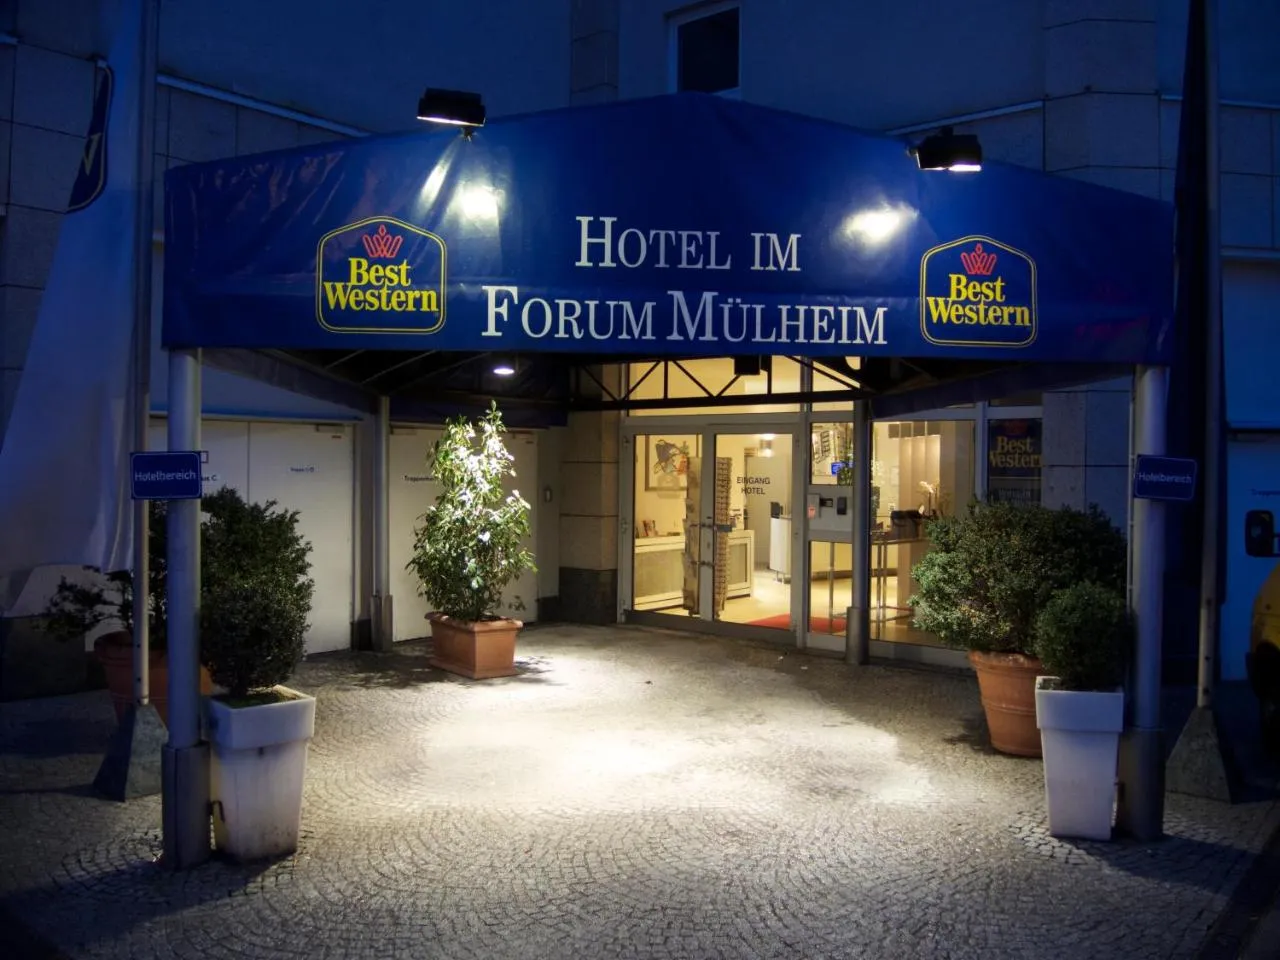 BEST WESTERN Hotel im Forum Mülheim